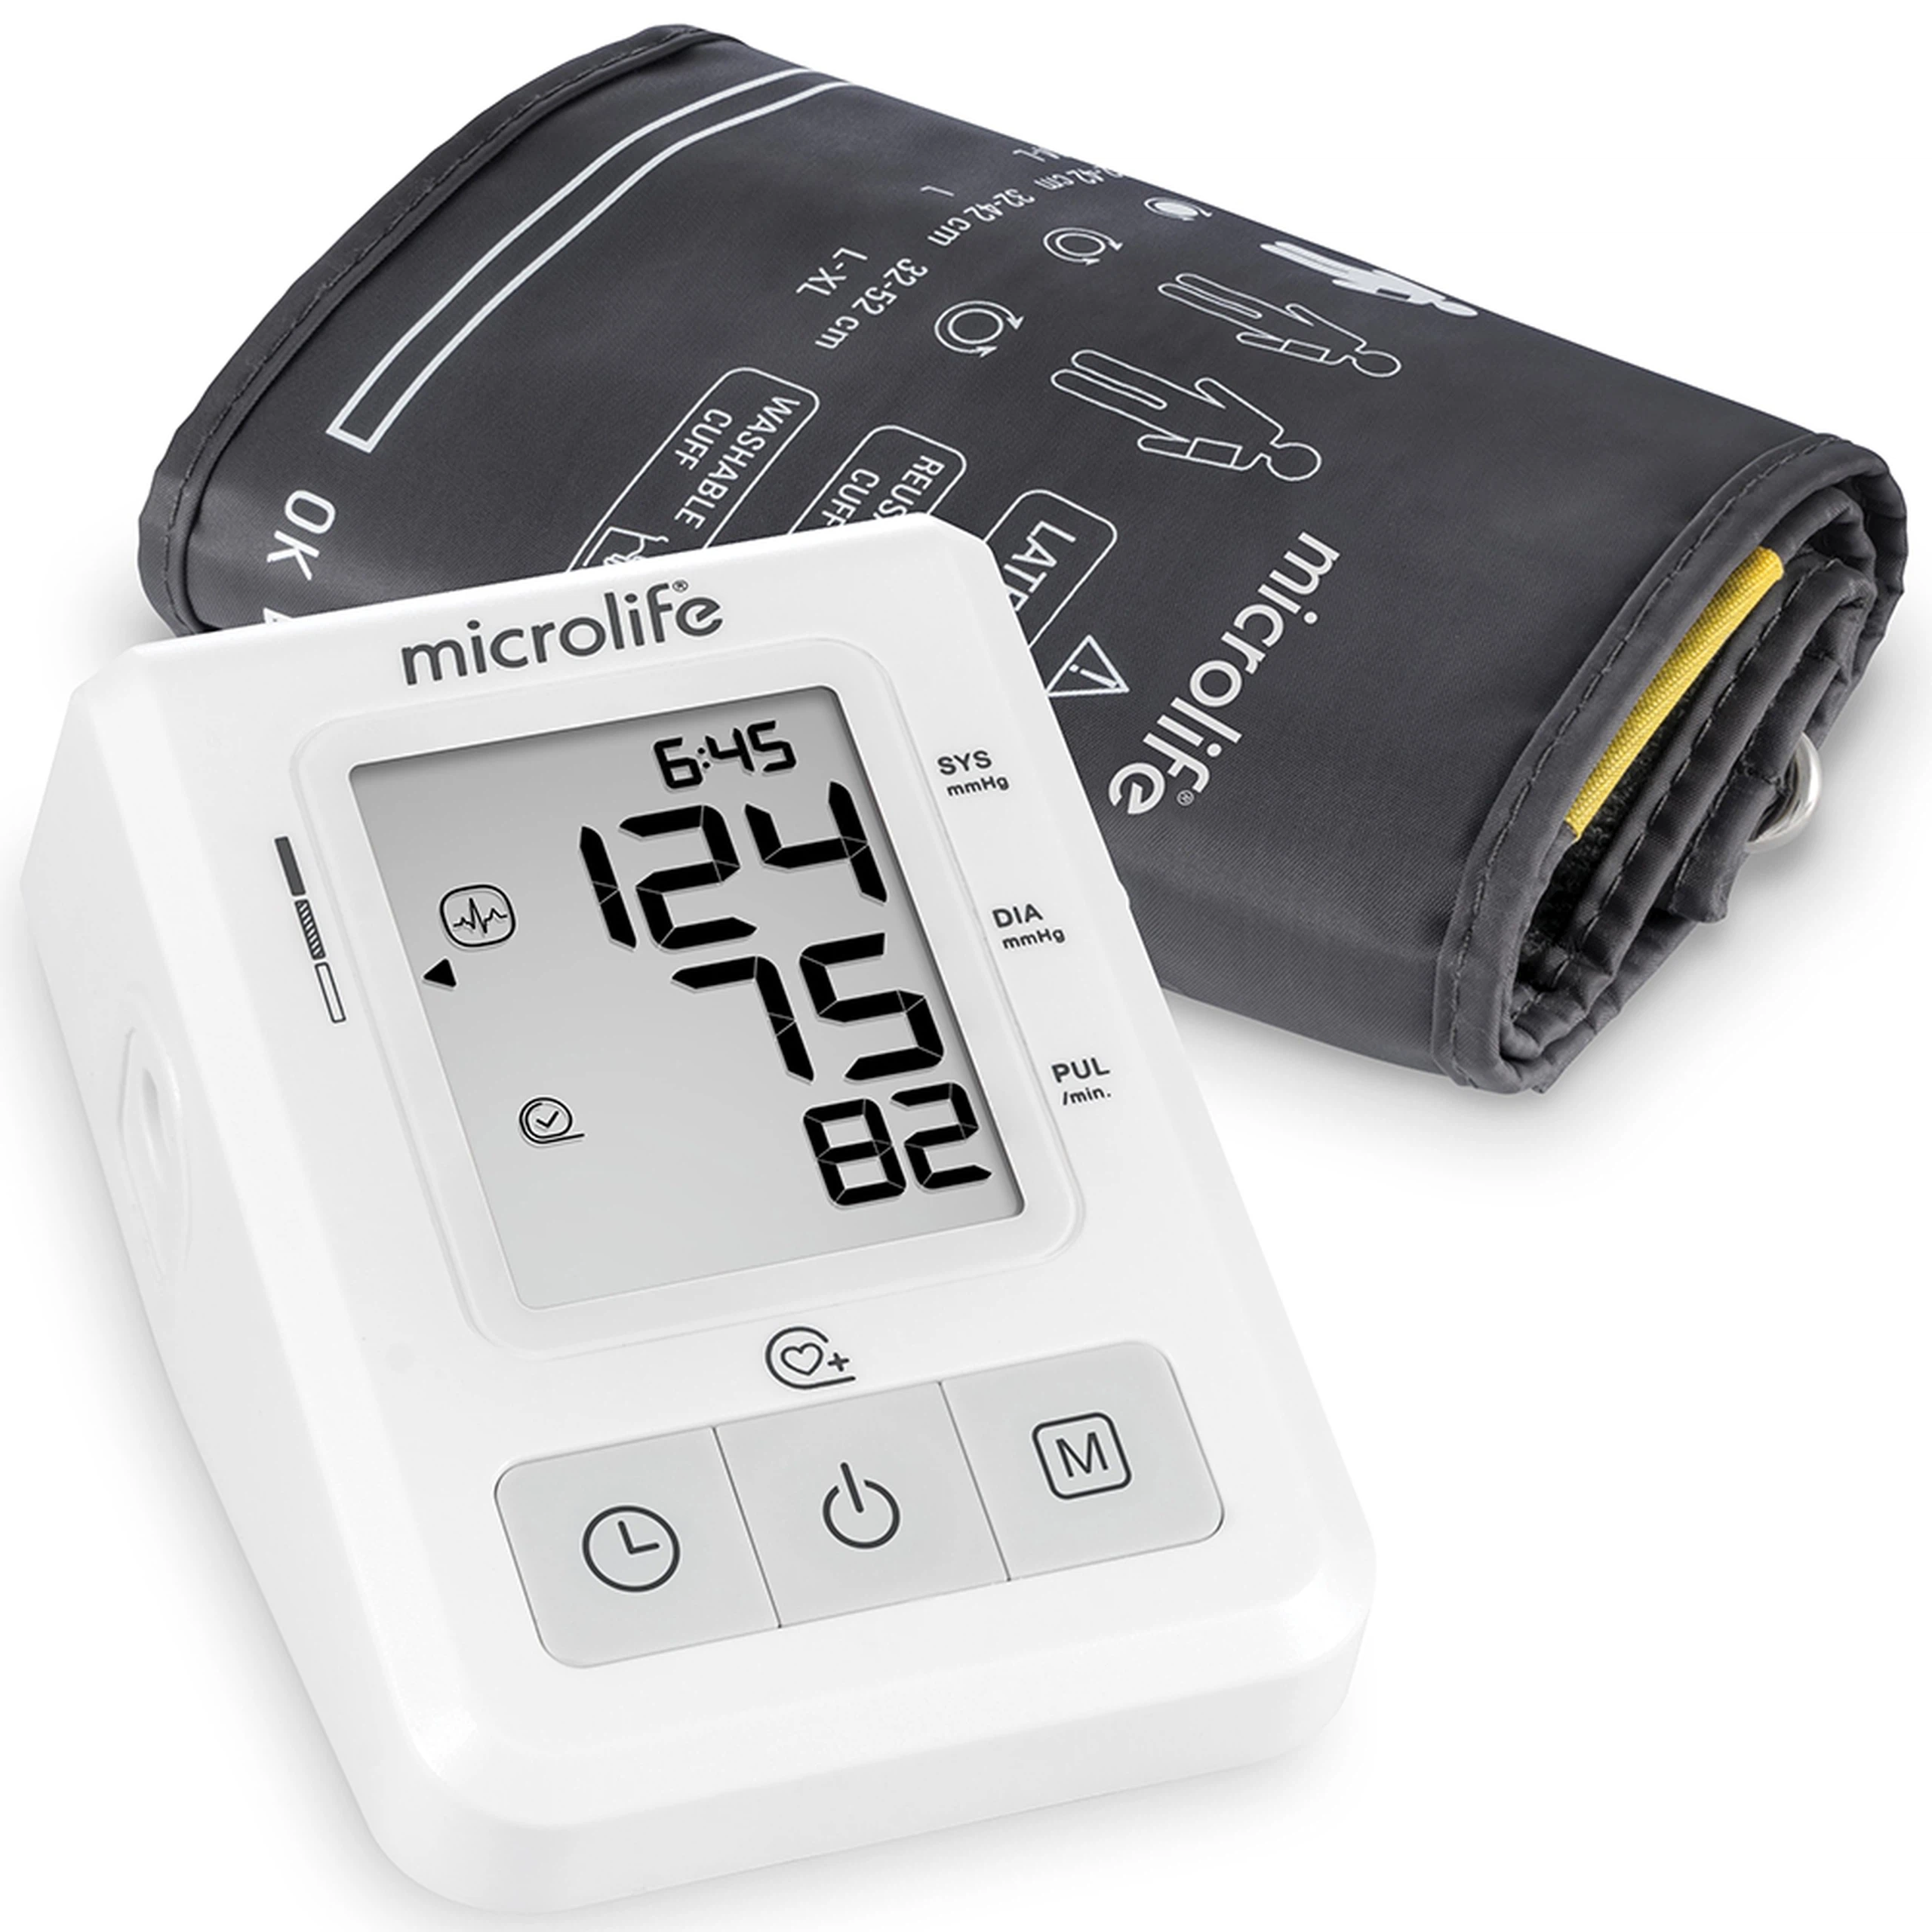 Máy đo huyết áp bắp tay Microlife B2 Basic thế hệ mới cho độ chính xác cao, dễ sử dụng